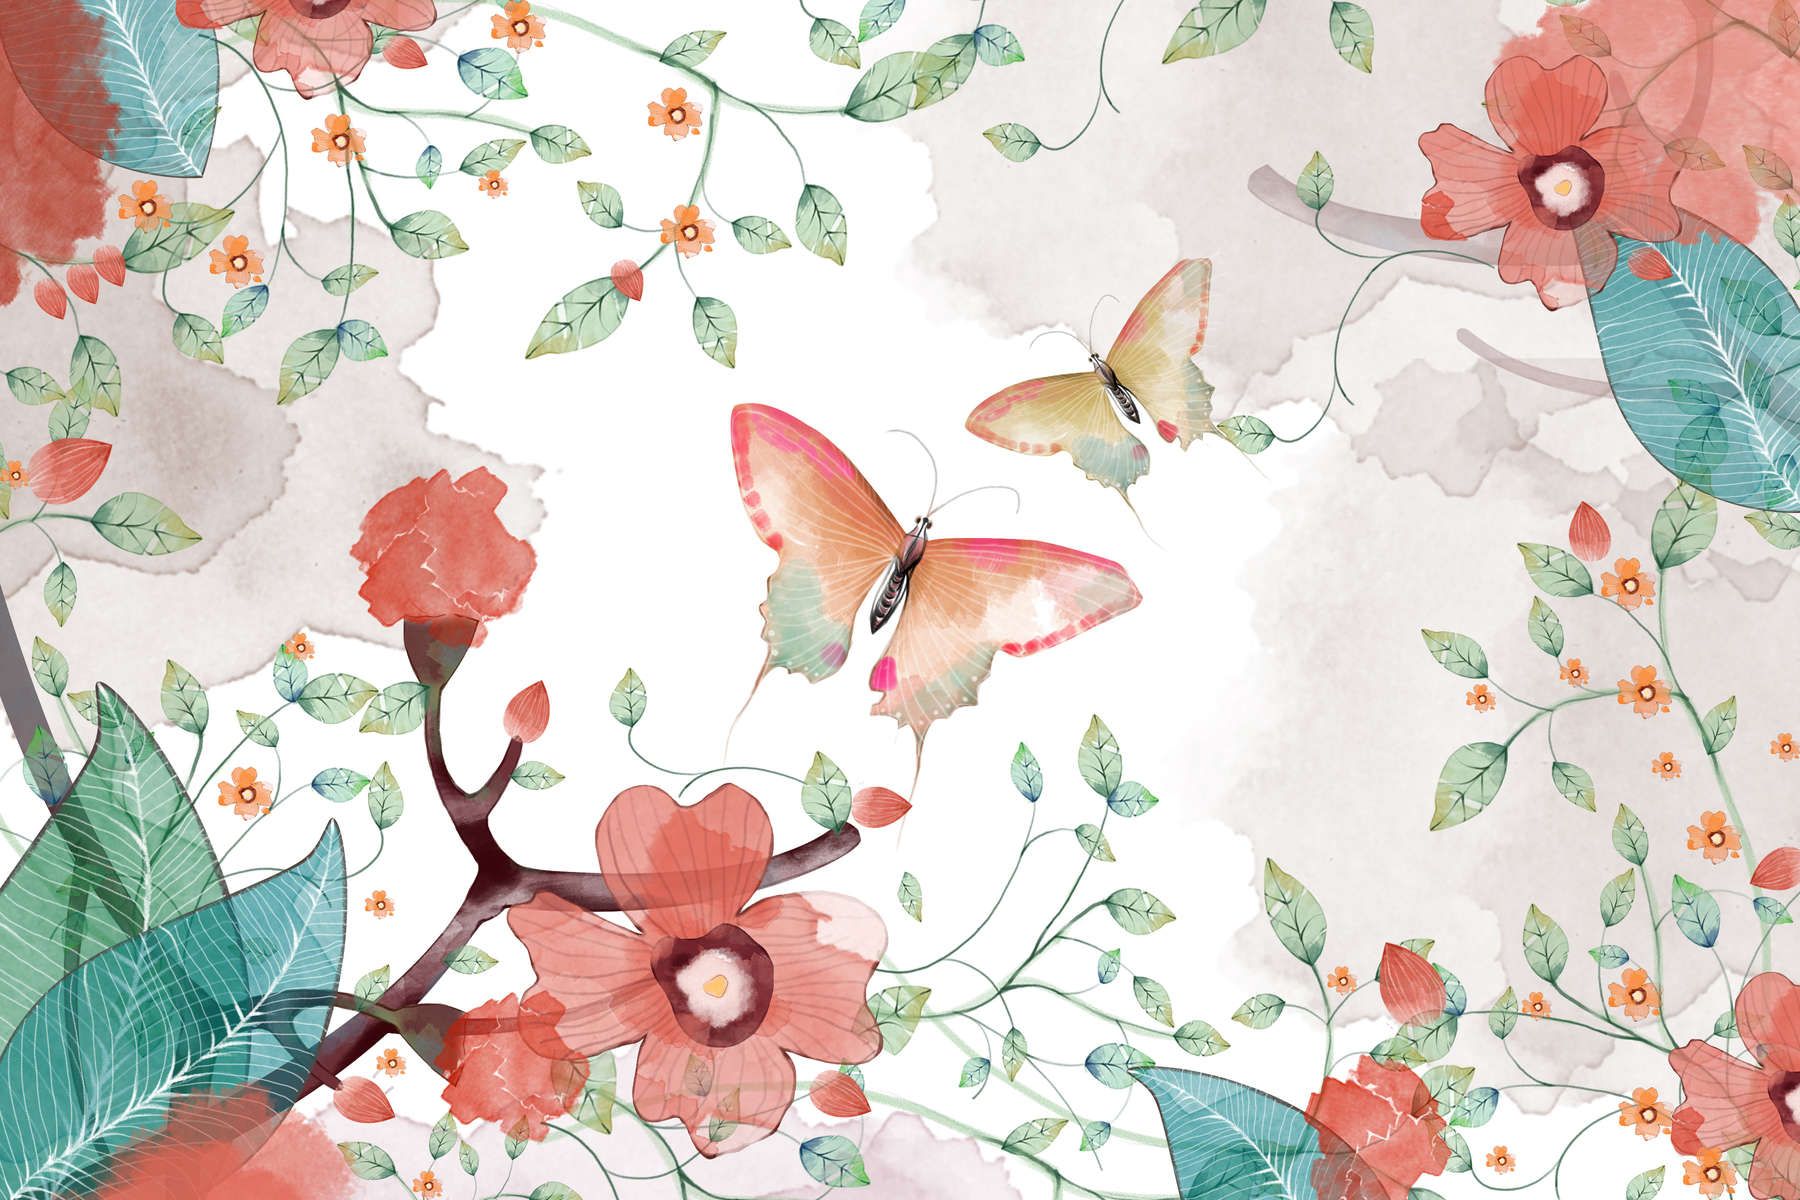             papiers peints à impression numérique floral avec feuilles et papillons - intissé lisse et nacré
        